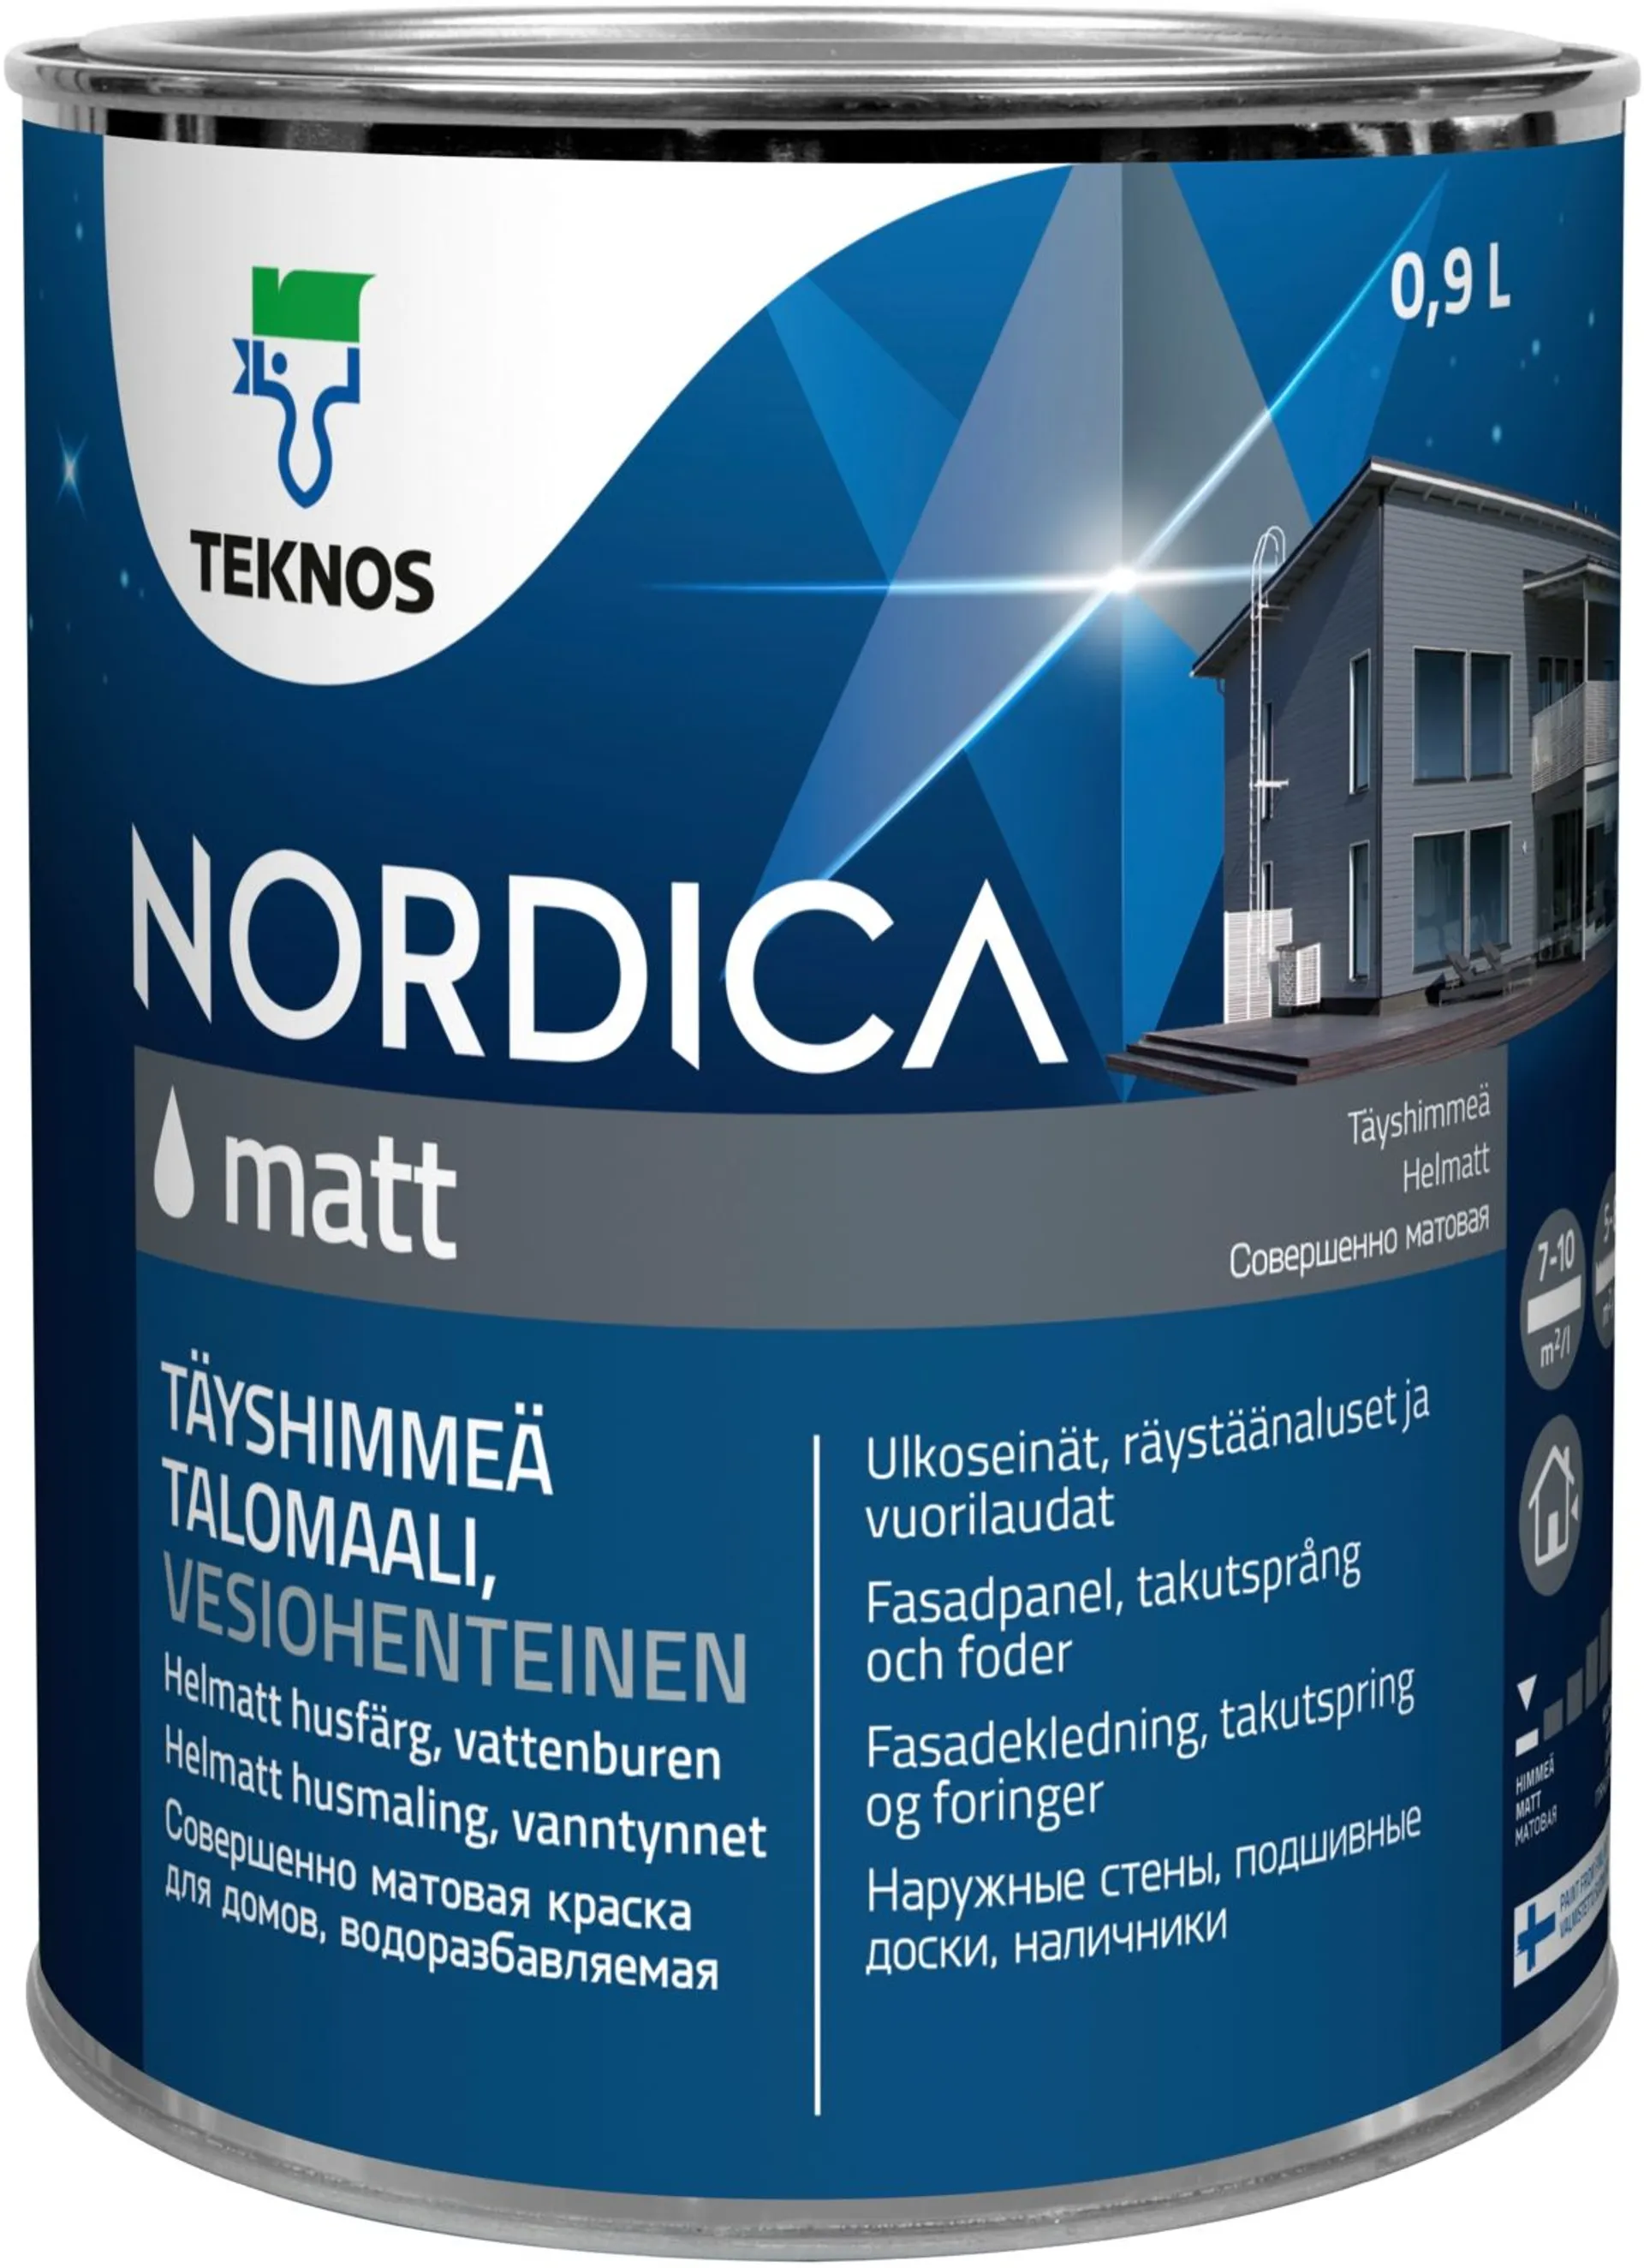 Teknos Nordica Matt talomaali 0,9l PM1 täyshimmeä, sävytettävissä